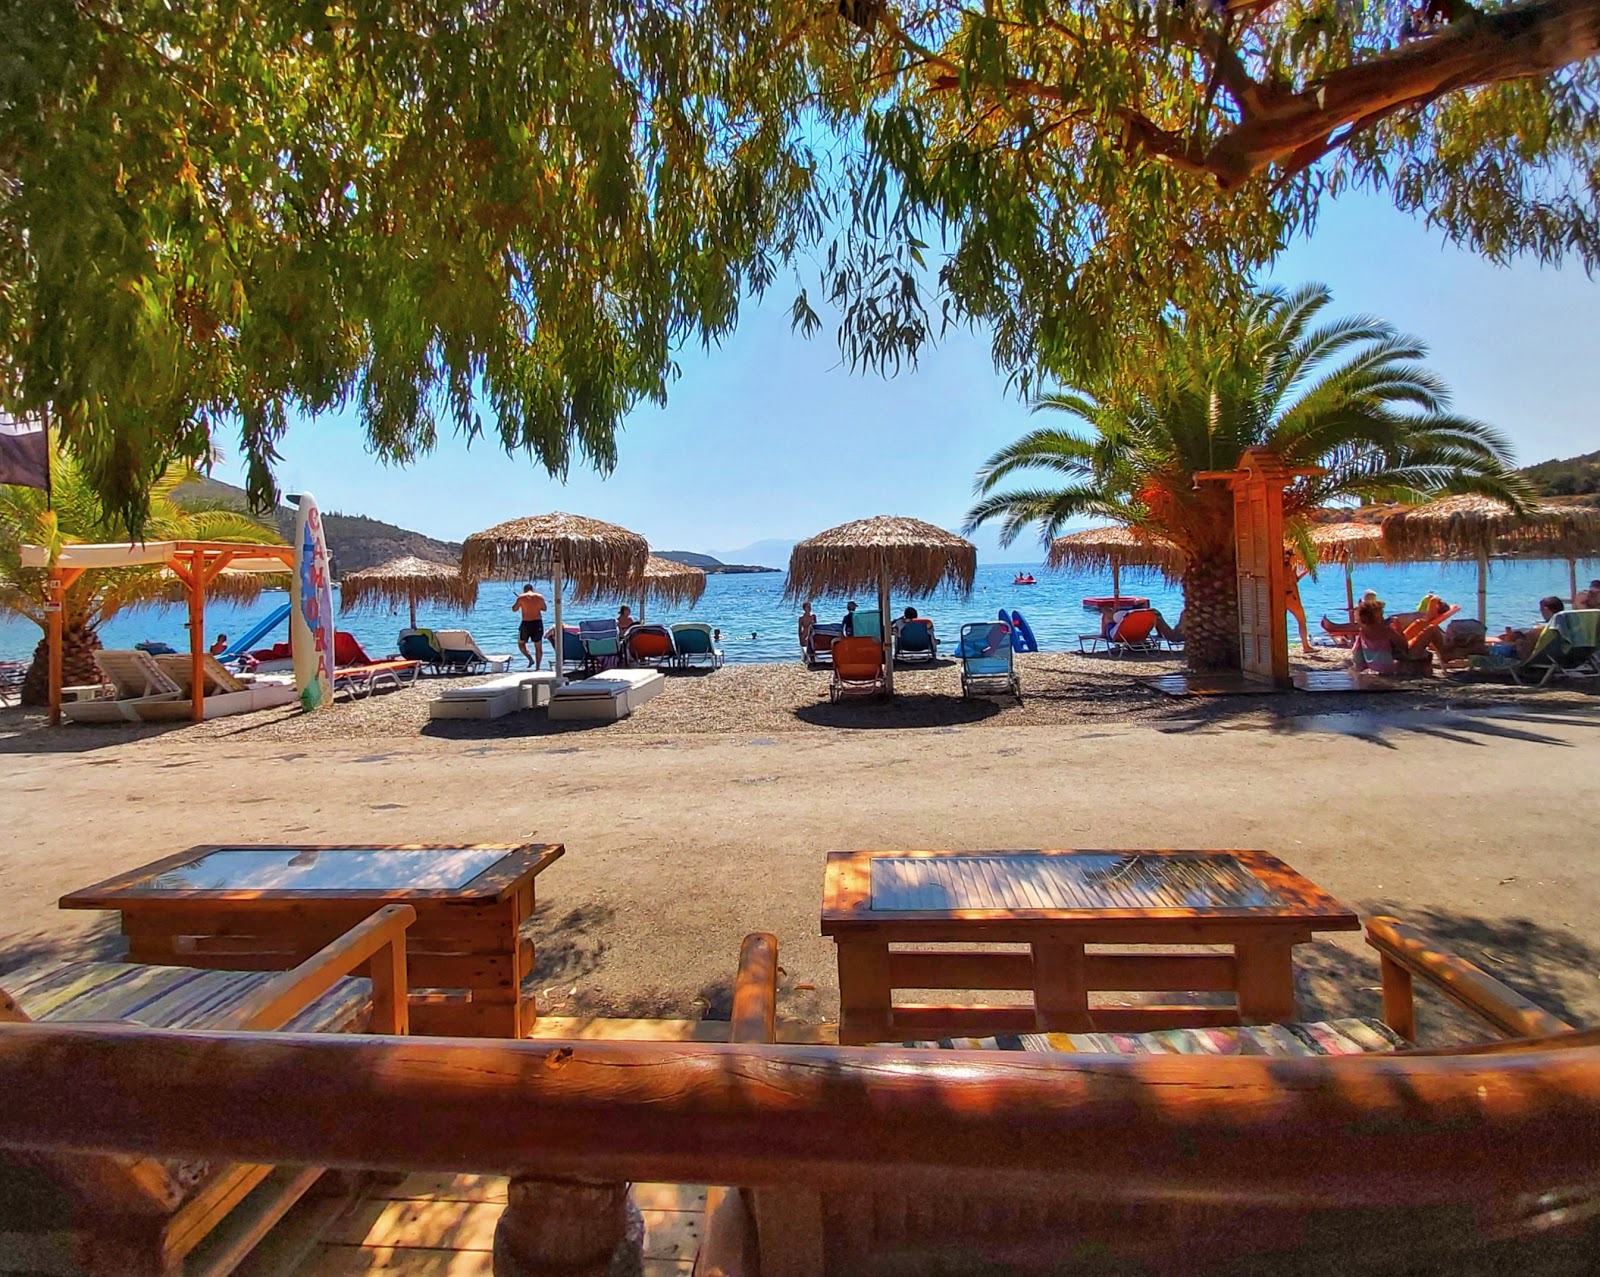 Foto af Agios Nikolaos beach og dens smukke landskab